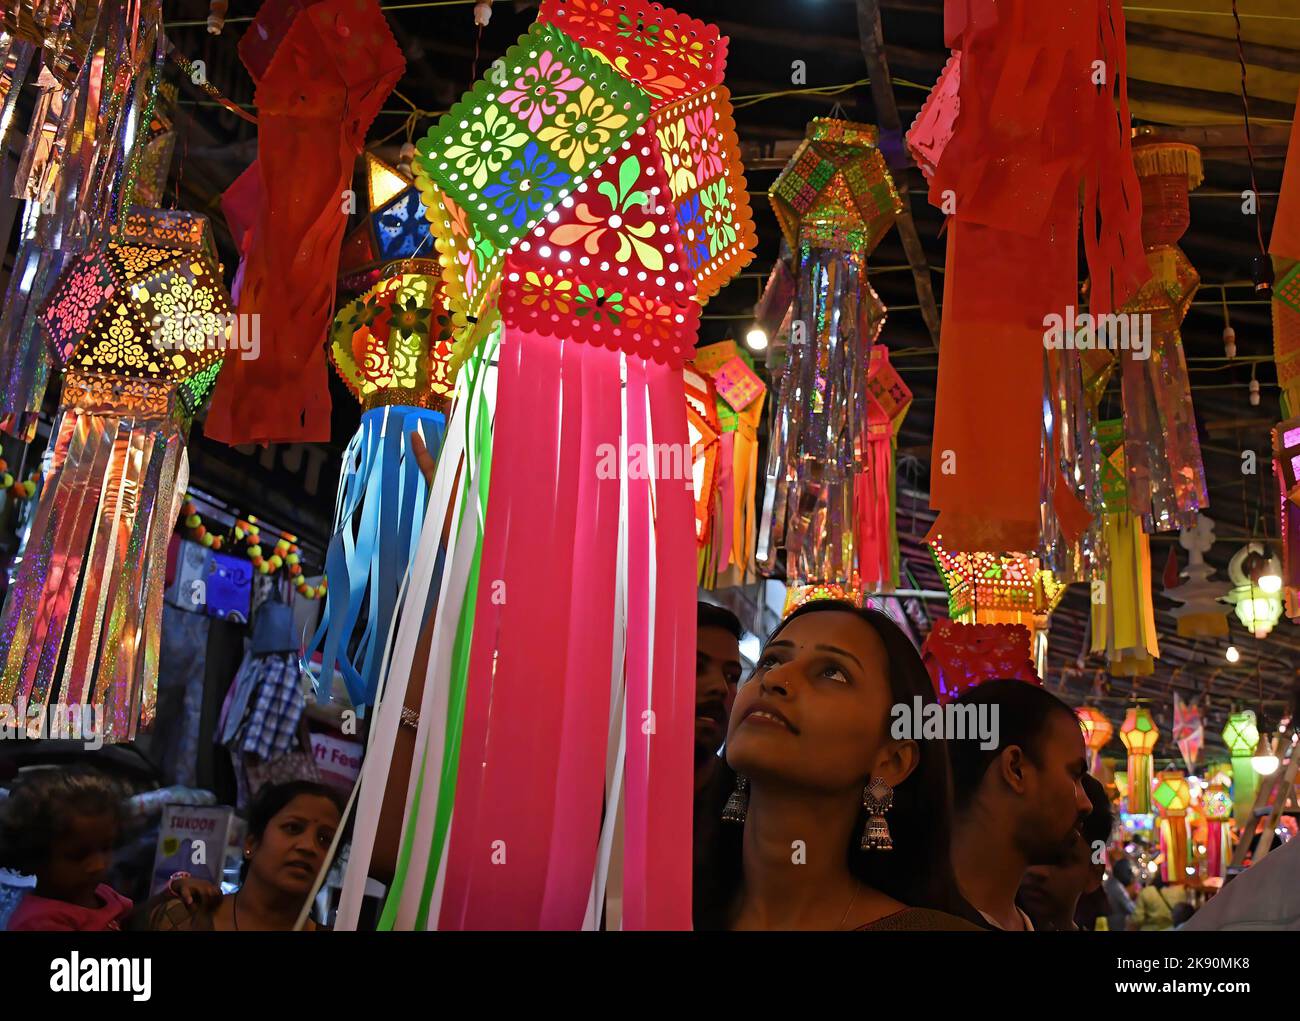 Eine Frau kauft Laternen auf den Straßen von Mumbai. Diwali wird als Lichterfest gefeiert, Hindus schmücken ihr Zuhause mit irdenen Lampen und bunten Laternen in verschiedenen Formen und Größen. Diwali symbolisiert den Sieg des Lichts über die Dunkelheit. Stockfoto